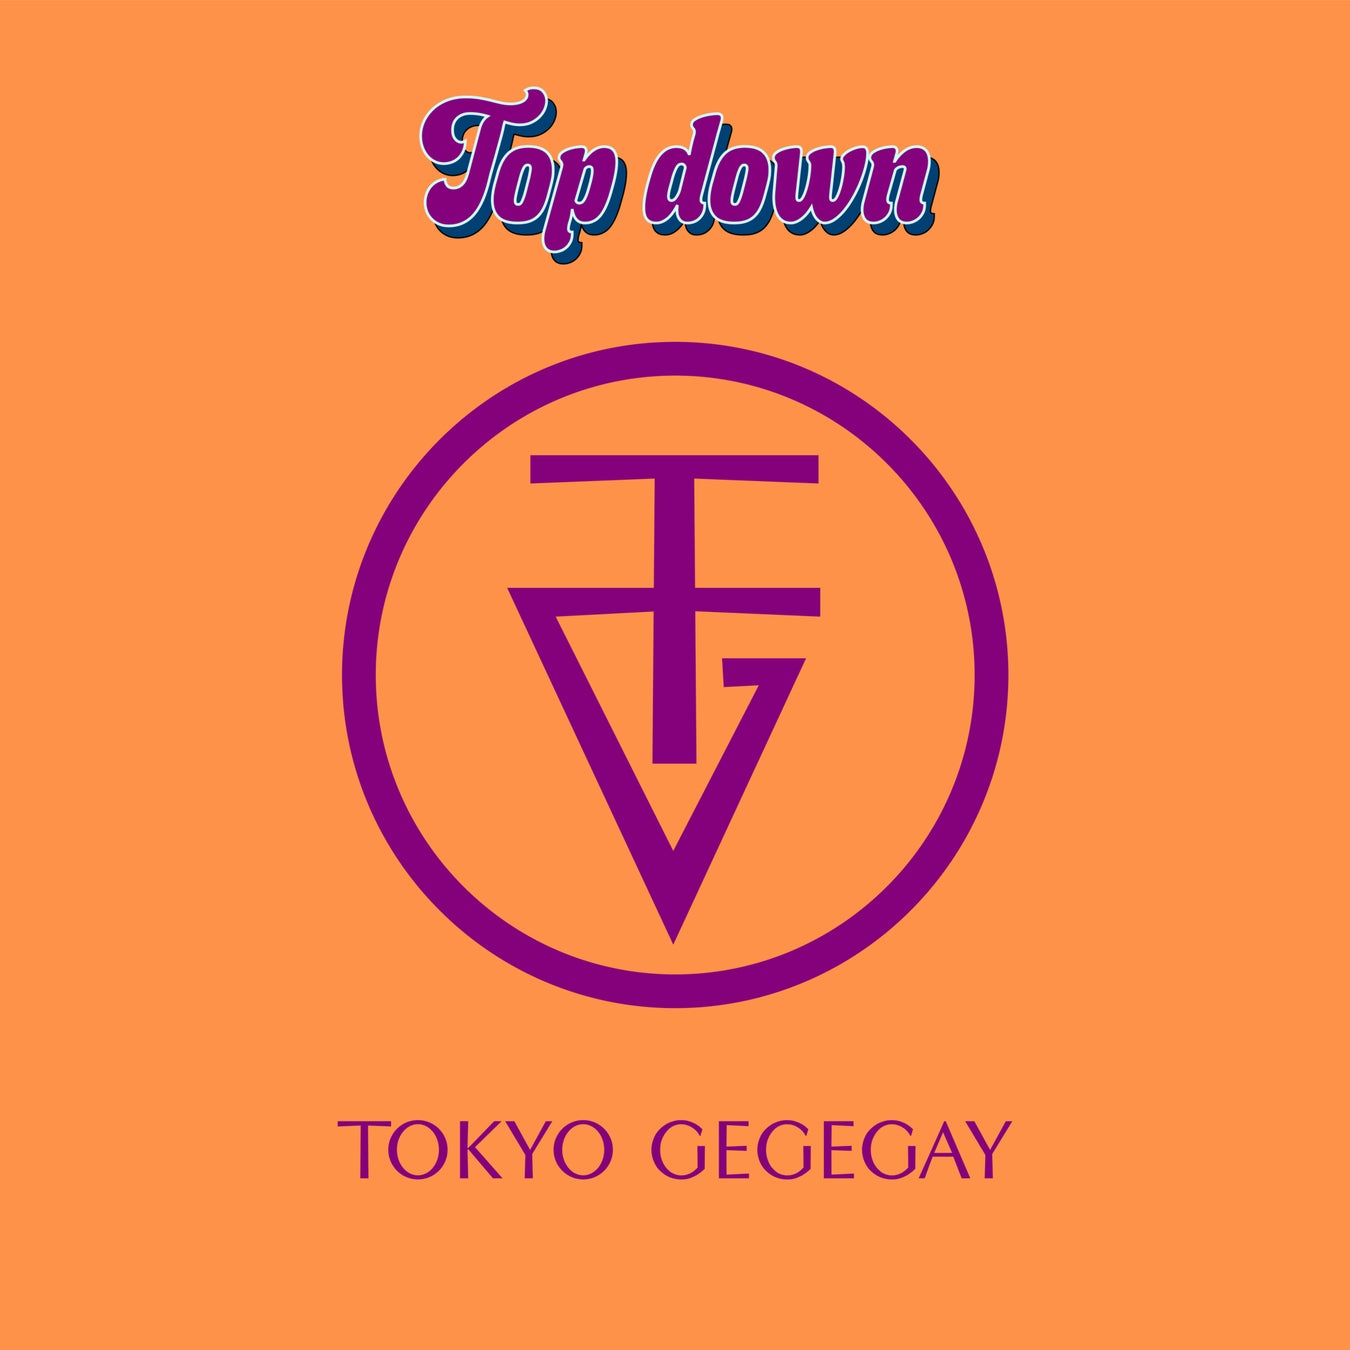 MIKEYソロプロジェクトとして初となるデジタルシングル 『Top down』を1月27日(金)に配信リリース。 ソロ活動を決意した下剋上の意思表明となる力強い楽曲に。のサブ画像1_配信ジャケット